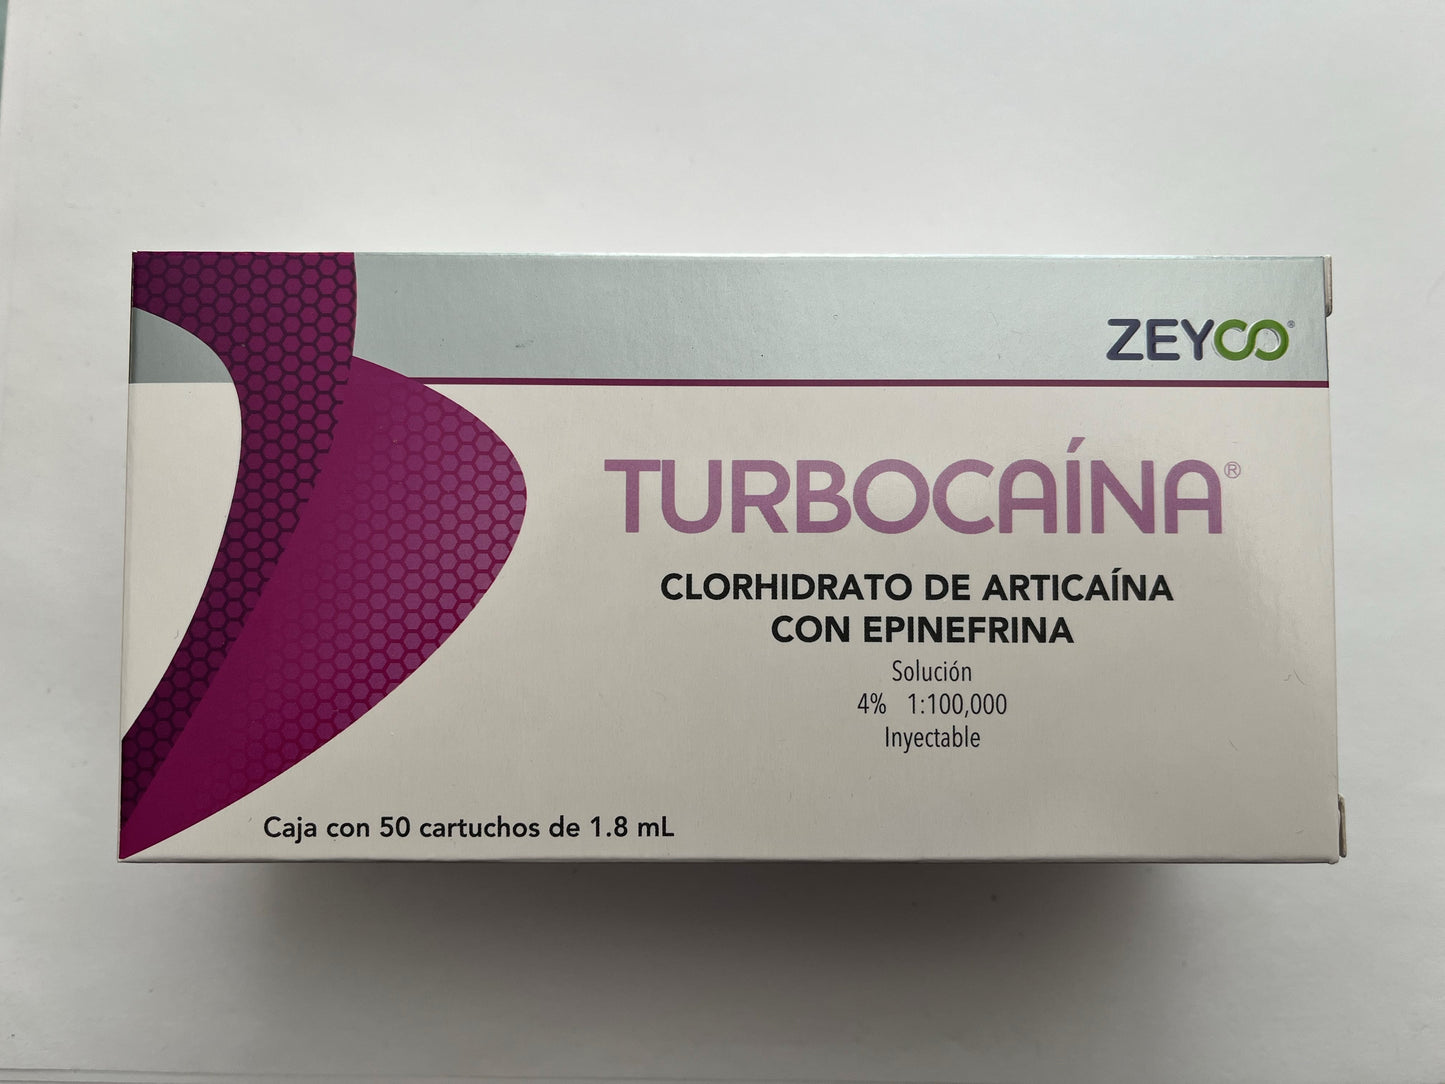 Anestesia turbocaína artícaína con epinefrina 4% caja con 50 cartucho vidrio